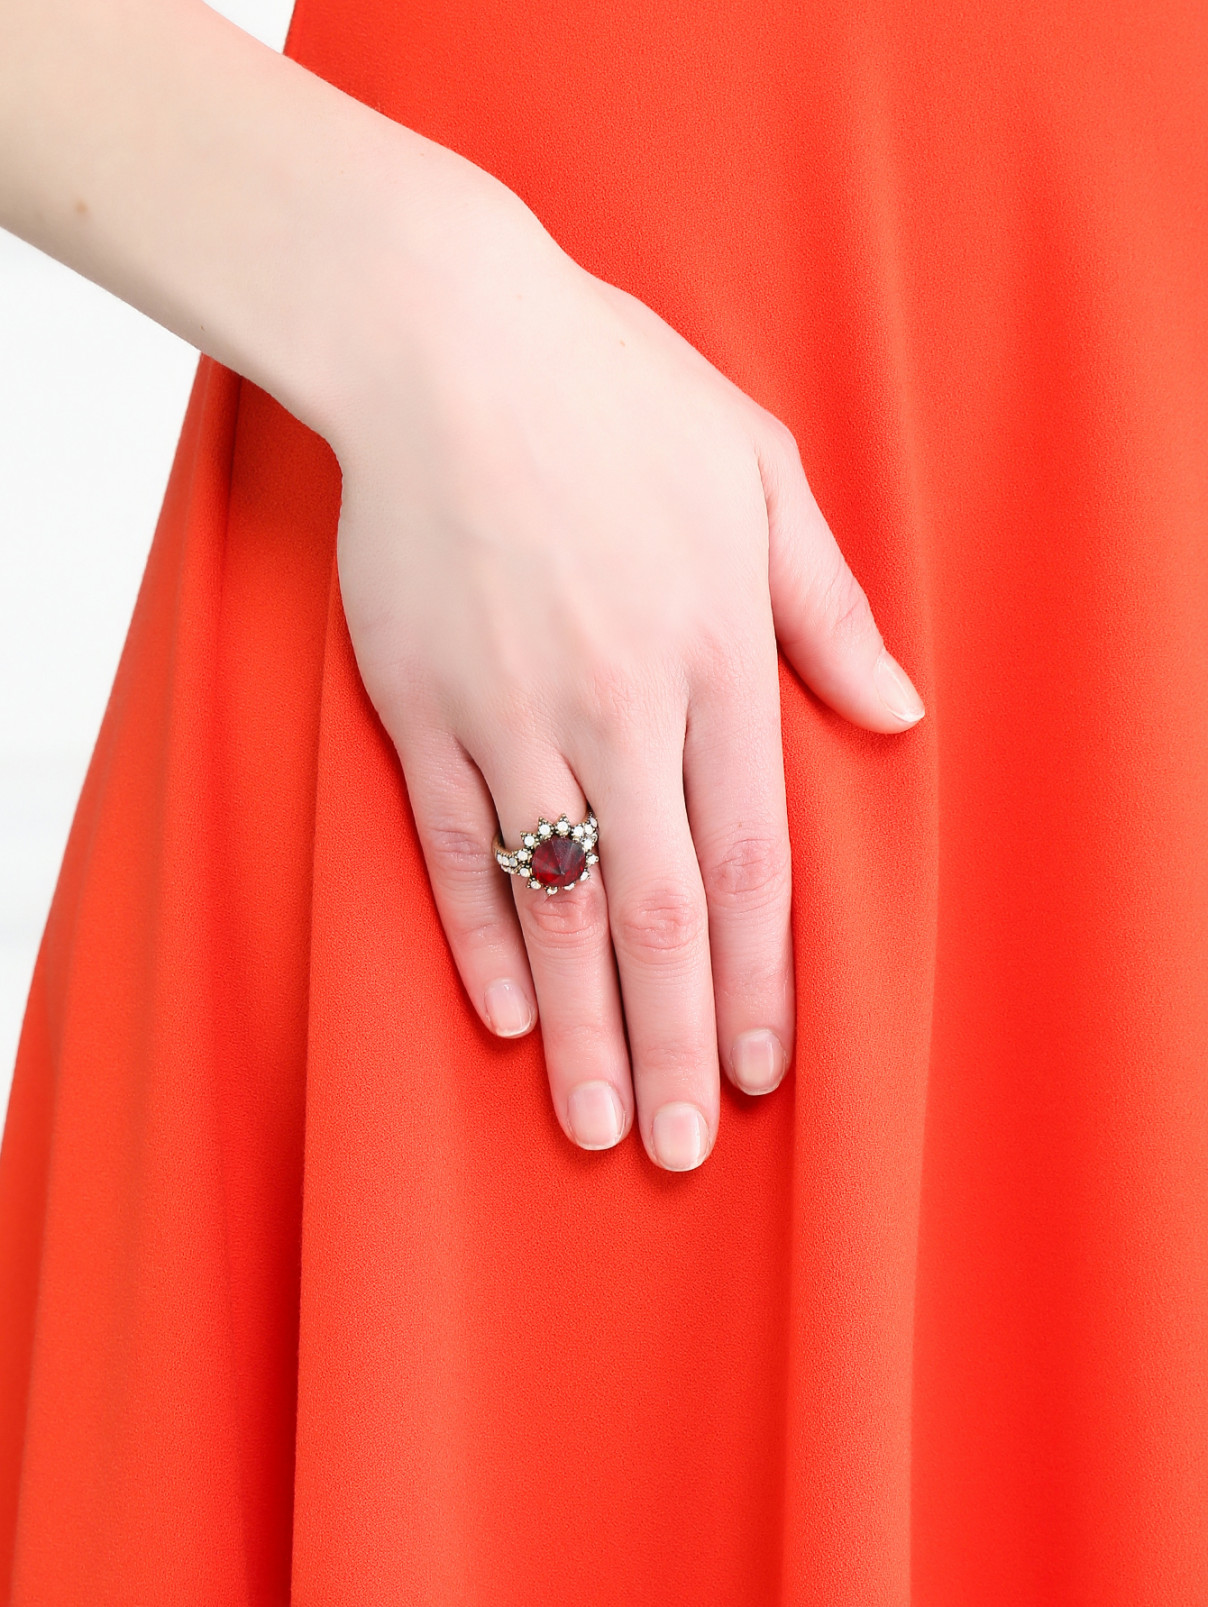 Кольцо из металла декорированное кристаллами Look&Took  –  Модель Общий вид  – Цвет:  Красный